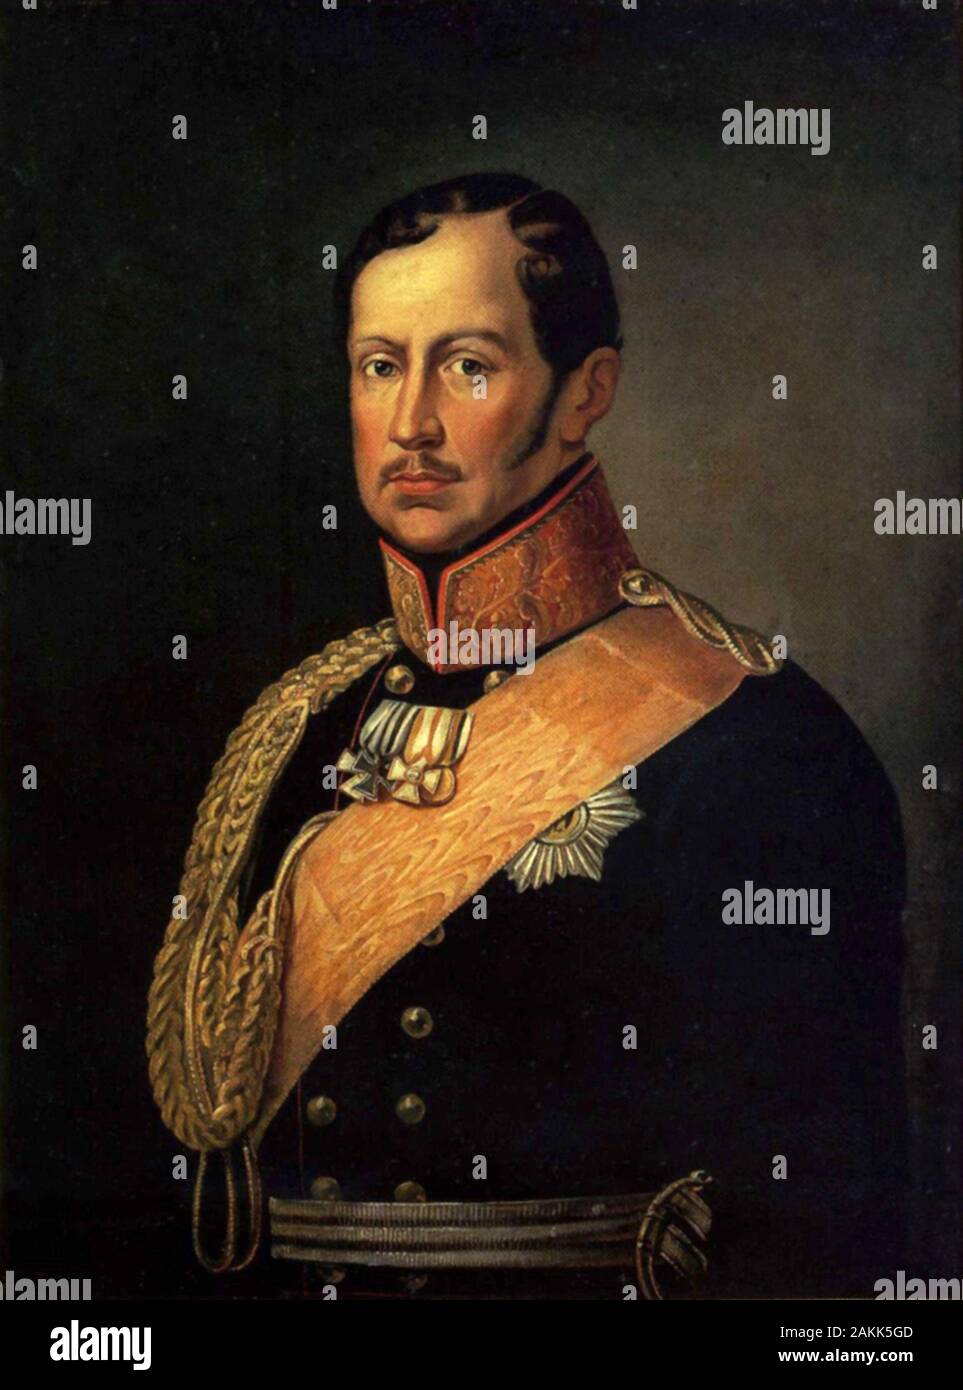 Frédéric-guillaume III, Friedrich Wilhelm III (1770 - 1840) roi de Prusse de 1797 à 1840. Il a régné sur la Prusse pendant les temps difficiles des guerres napoléoniennes et la fin du Saint Empire Romain. Banque D'Images